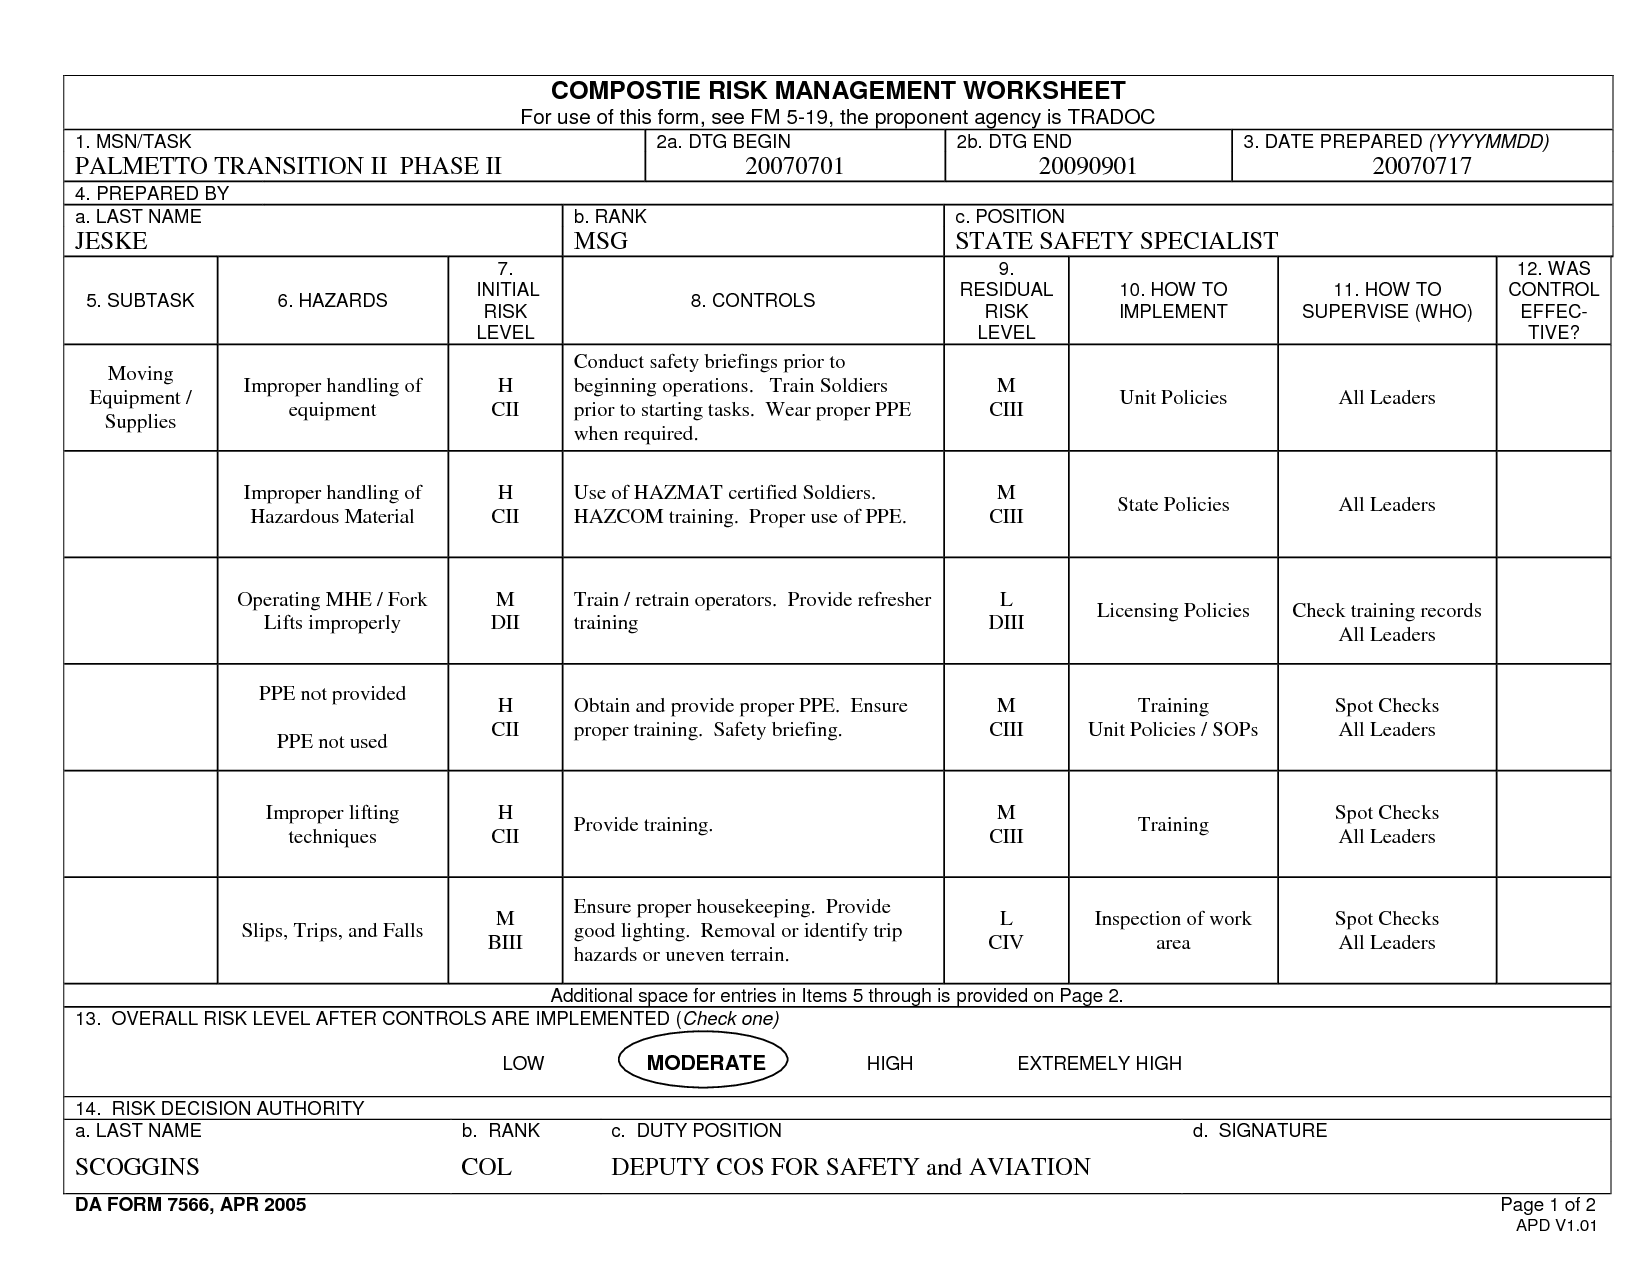 Army composite risk management worksheet